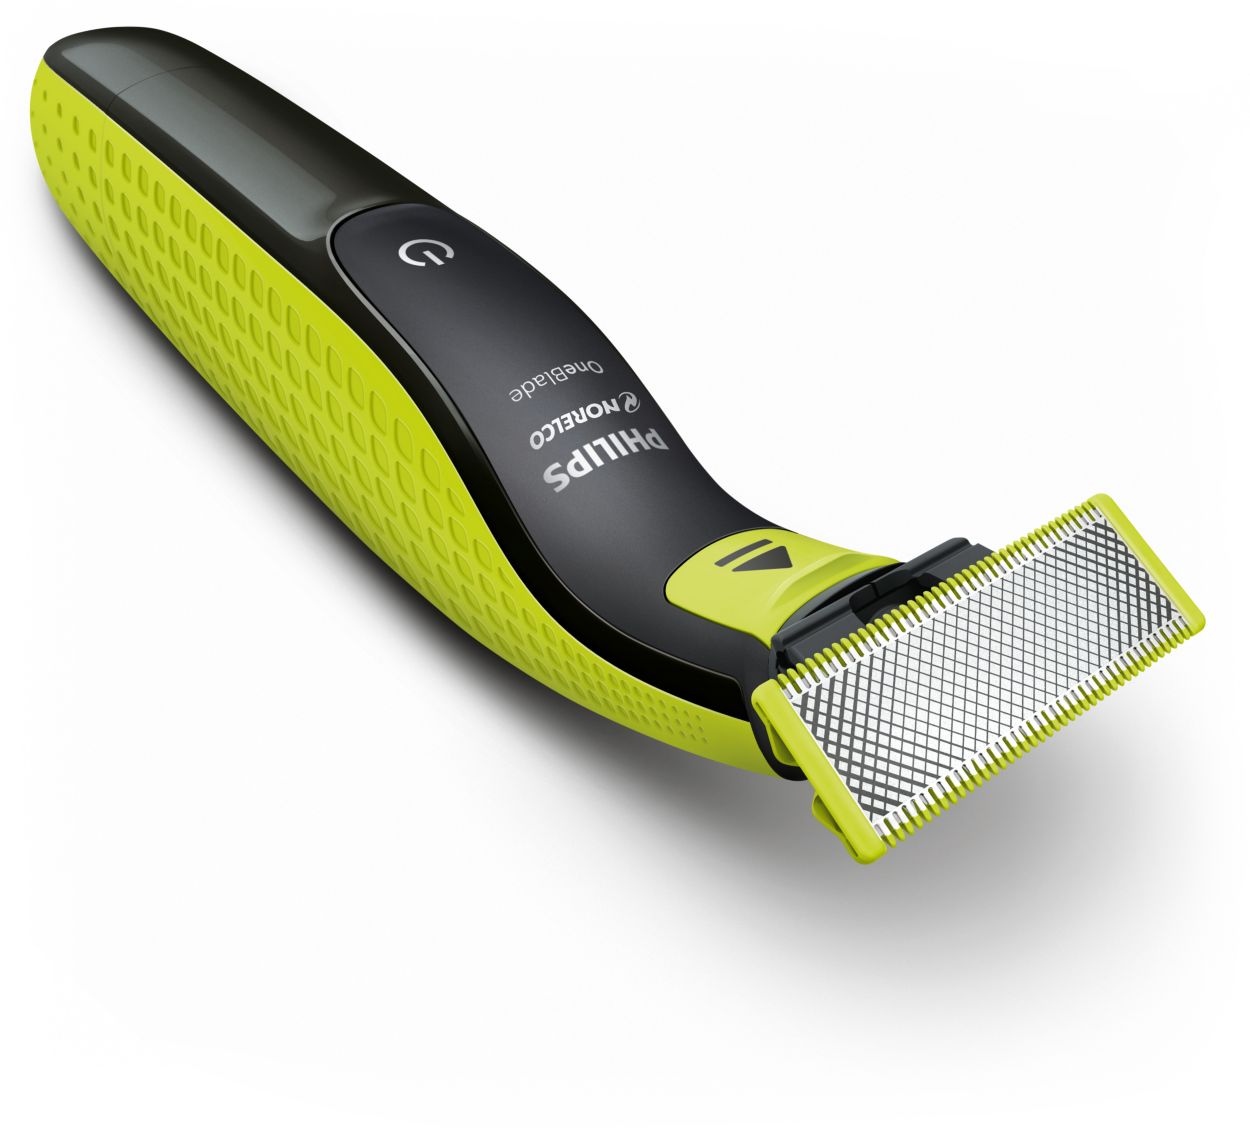 Philips Norelco OneBlade Razors: Trim, Edge & Shave